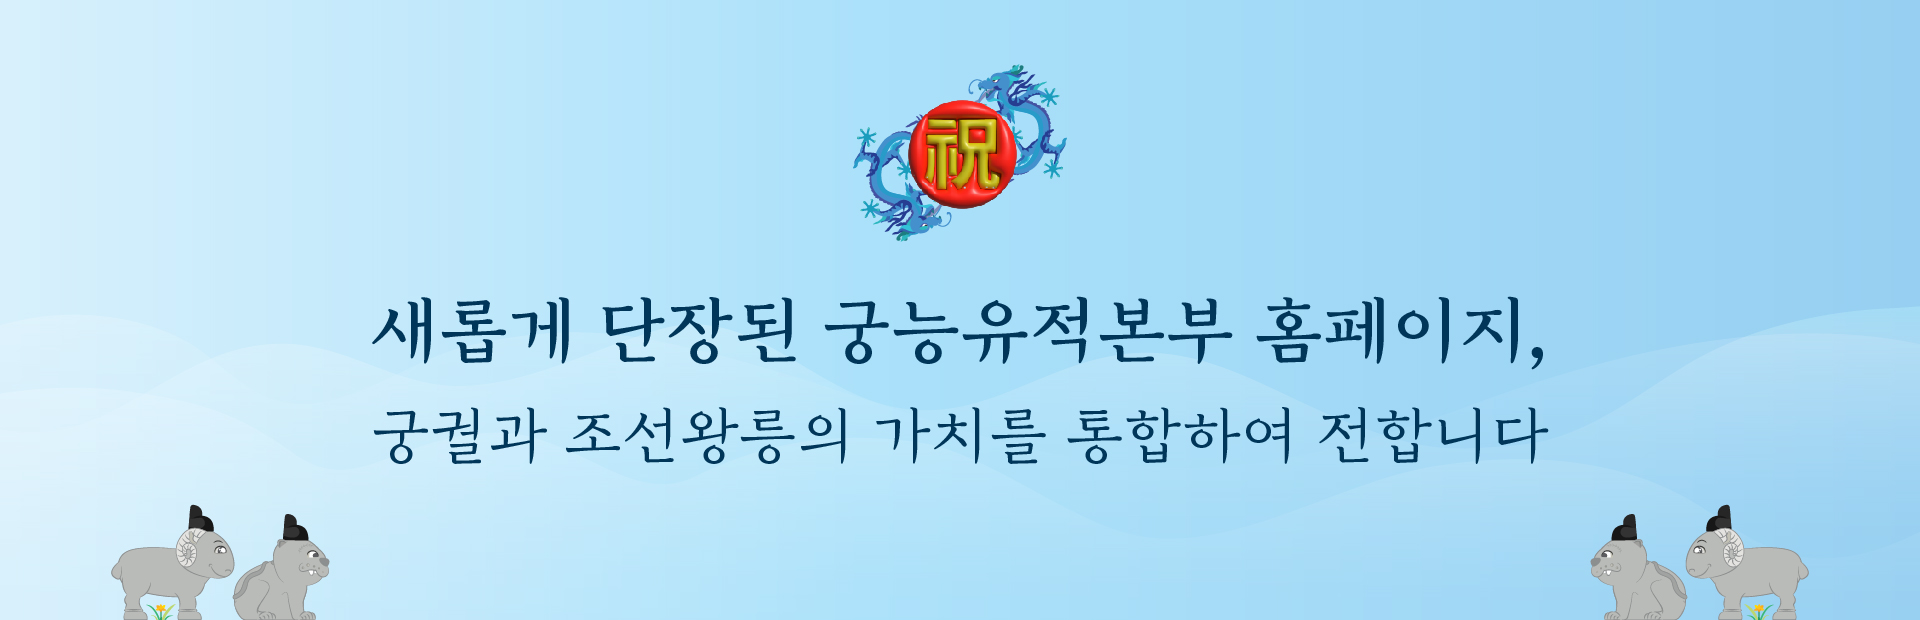 새롭게 단장된 궁능유적본부 홈페이지, 궁궐과 조선왕릉의 가치를 통합하여 전합니다